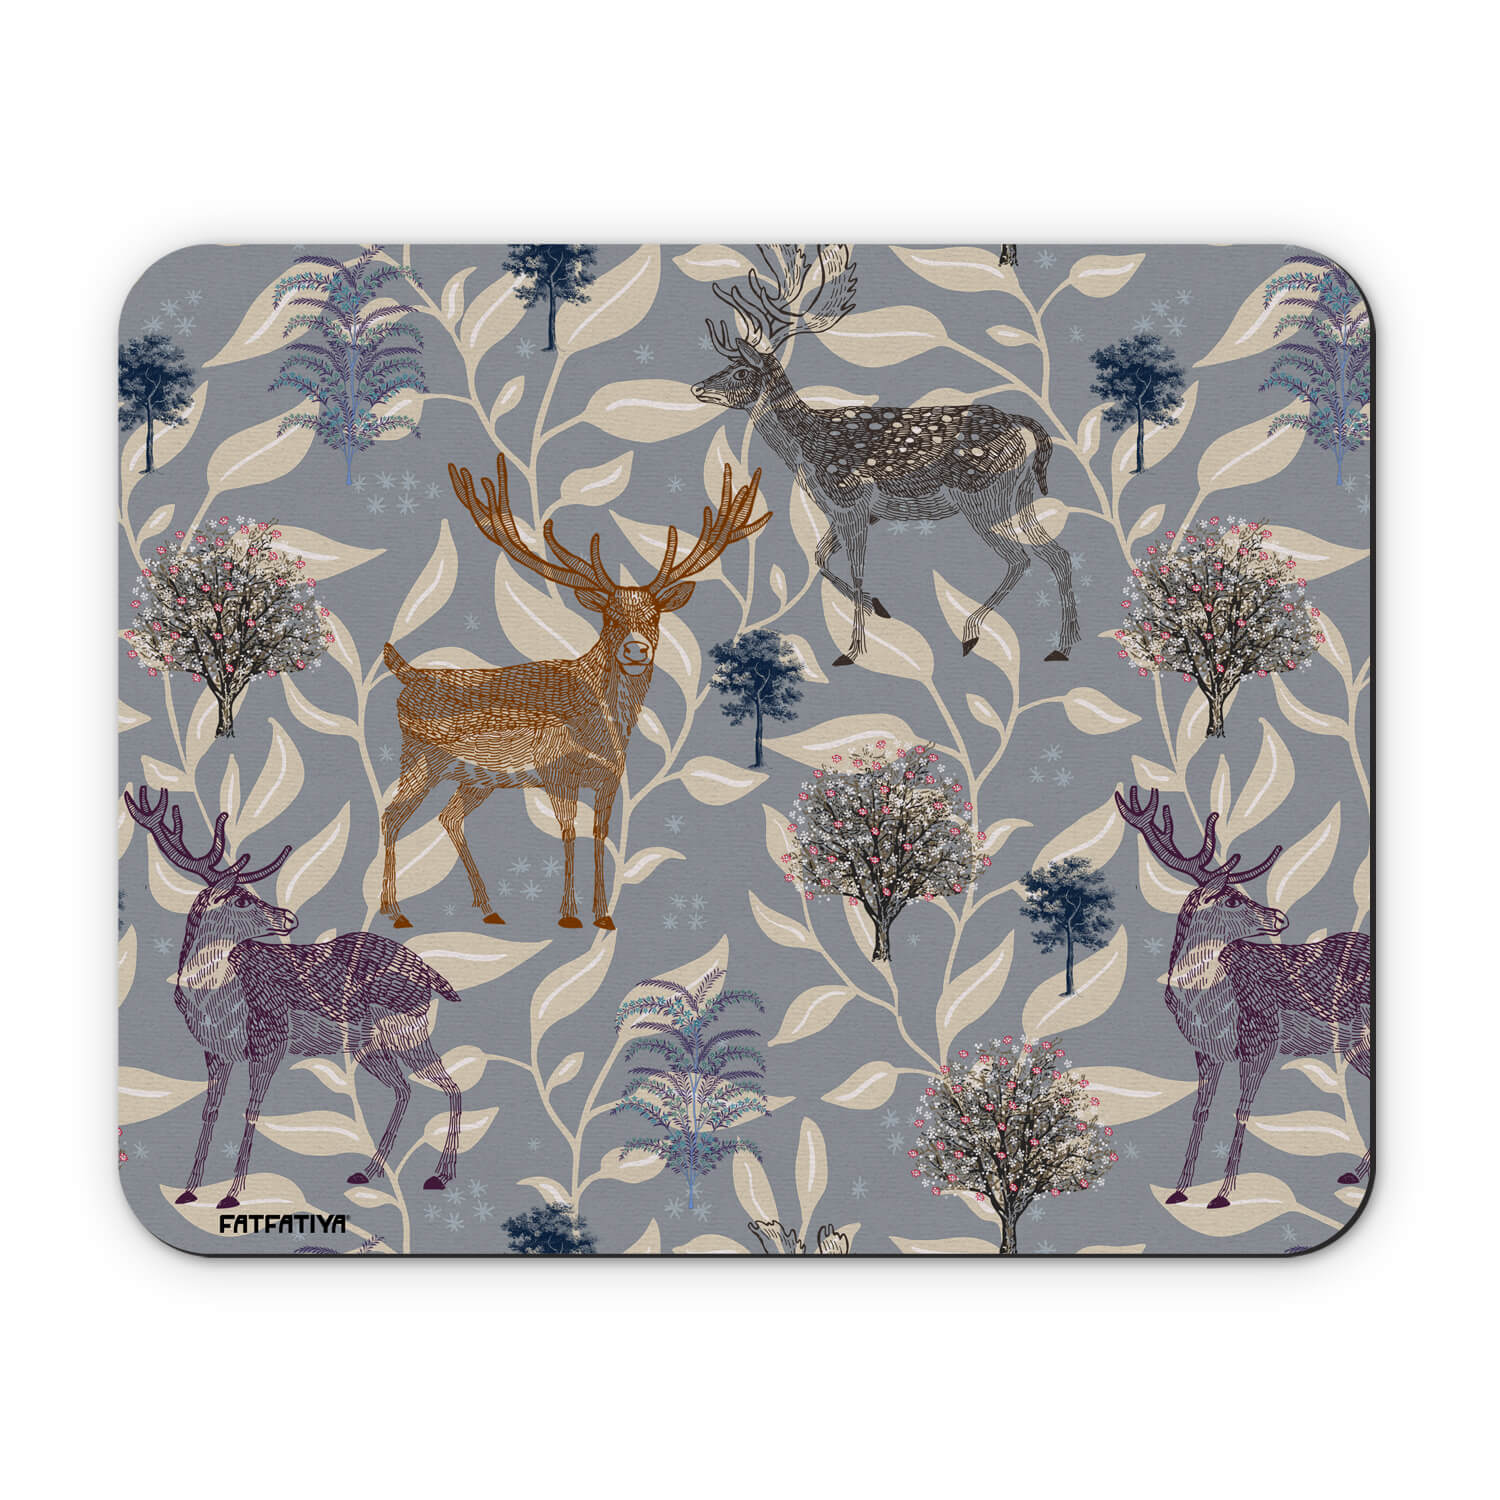 Beautiful Printed Deer Motif Table Mouse Pad